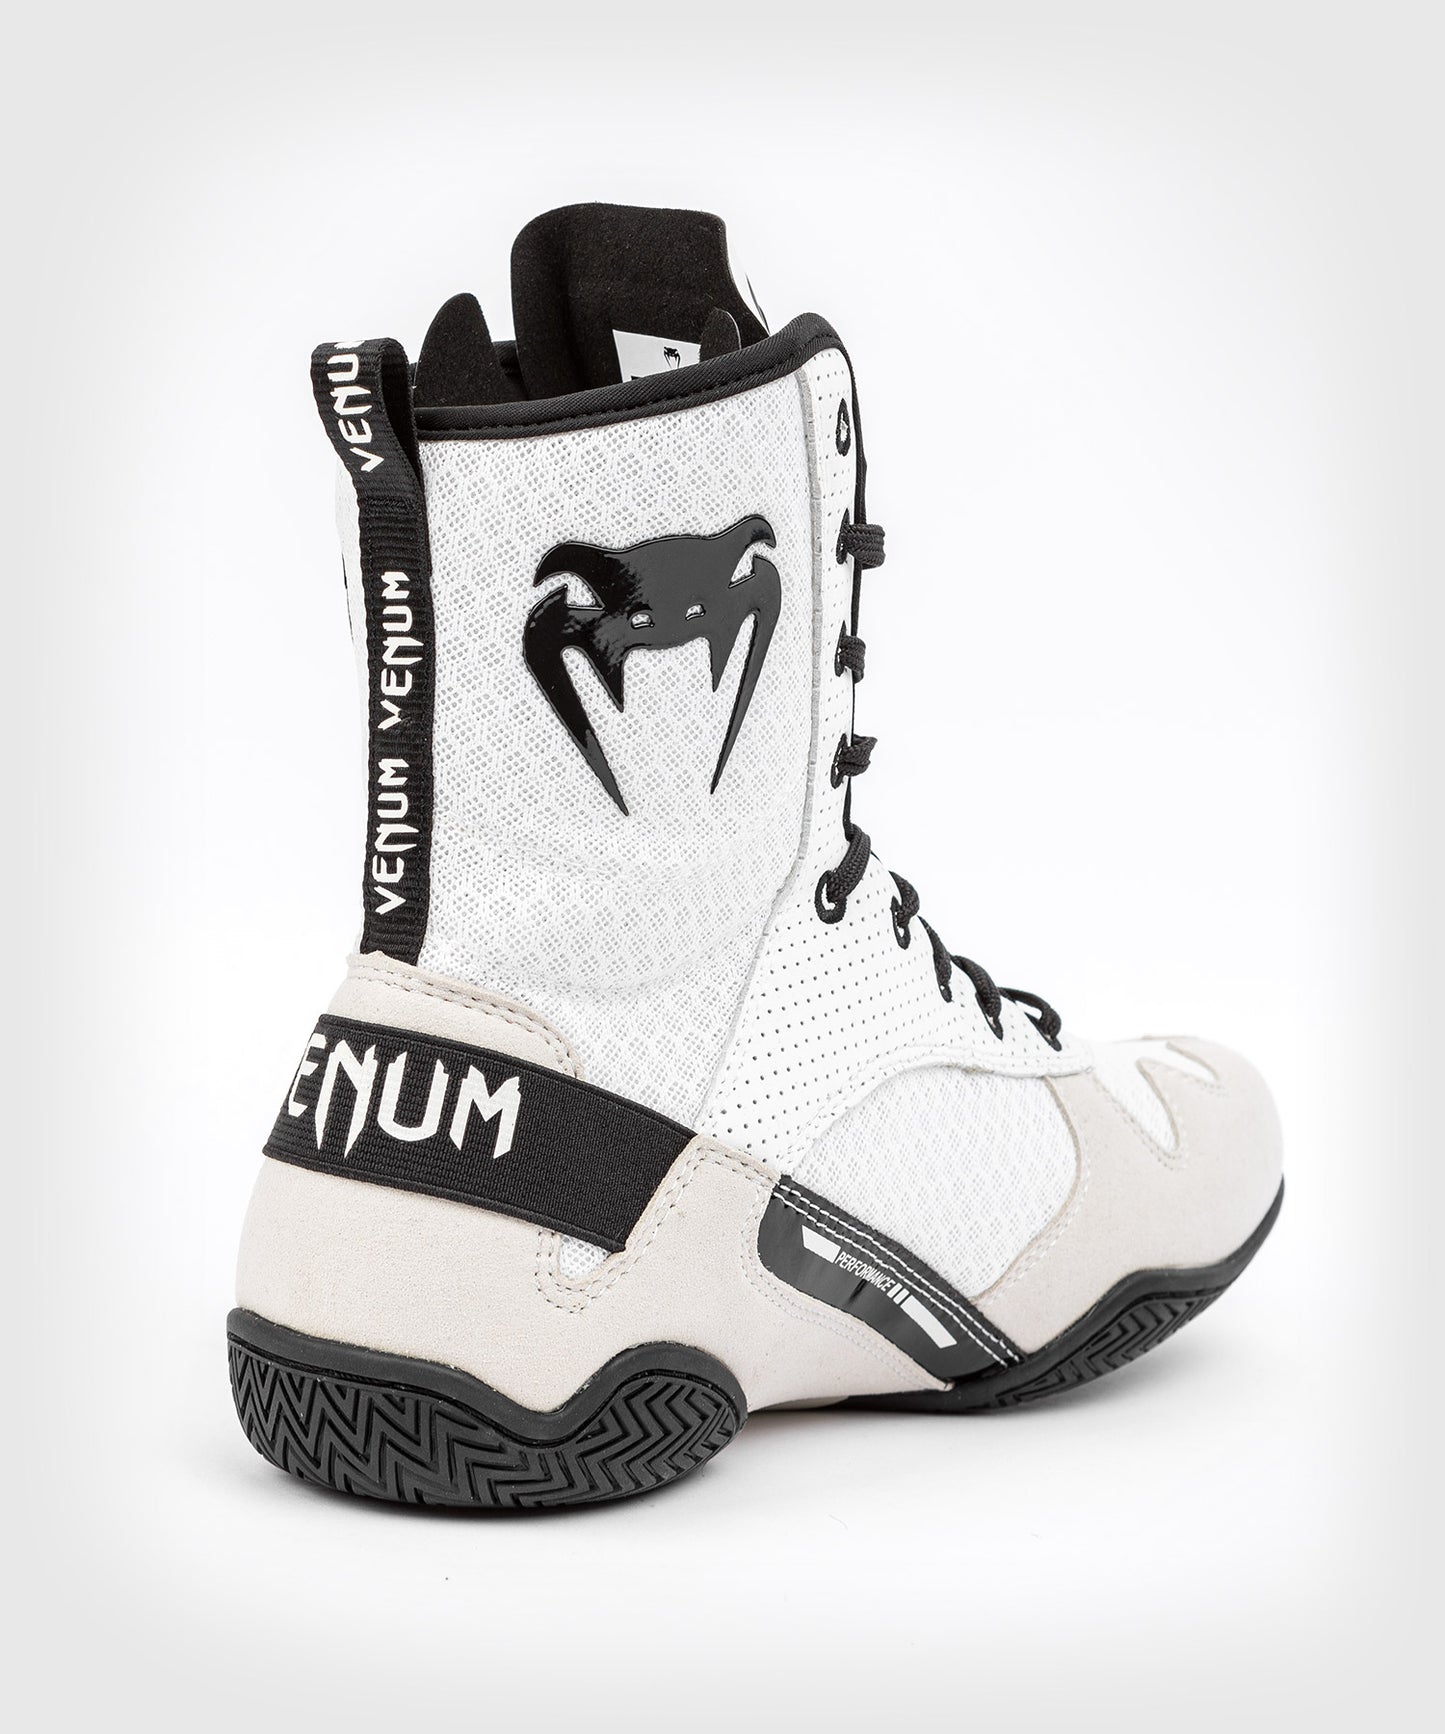 Venum Elite Boxing Schuh - Weiß/Schwarz